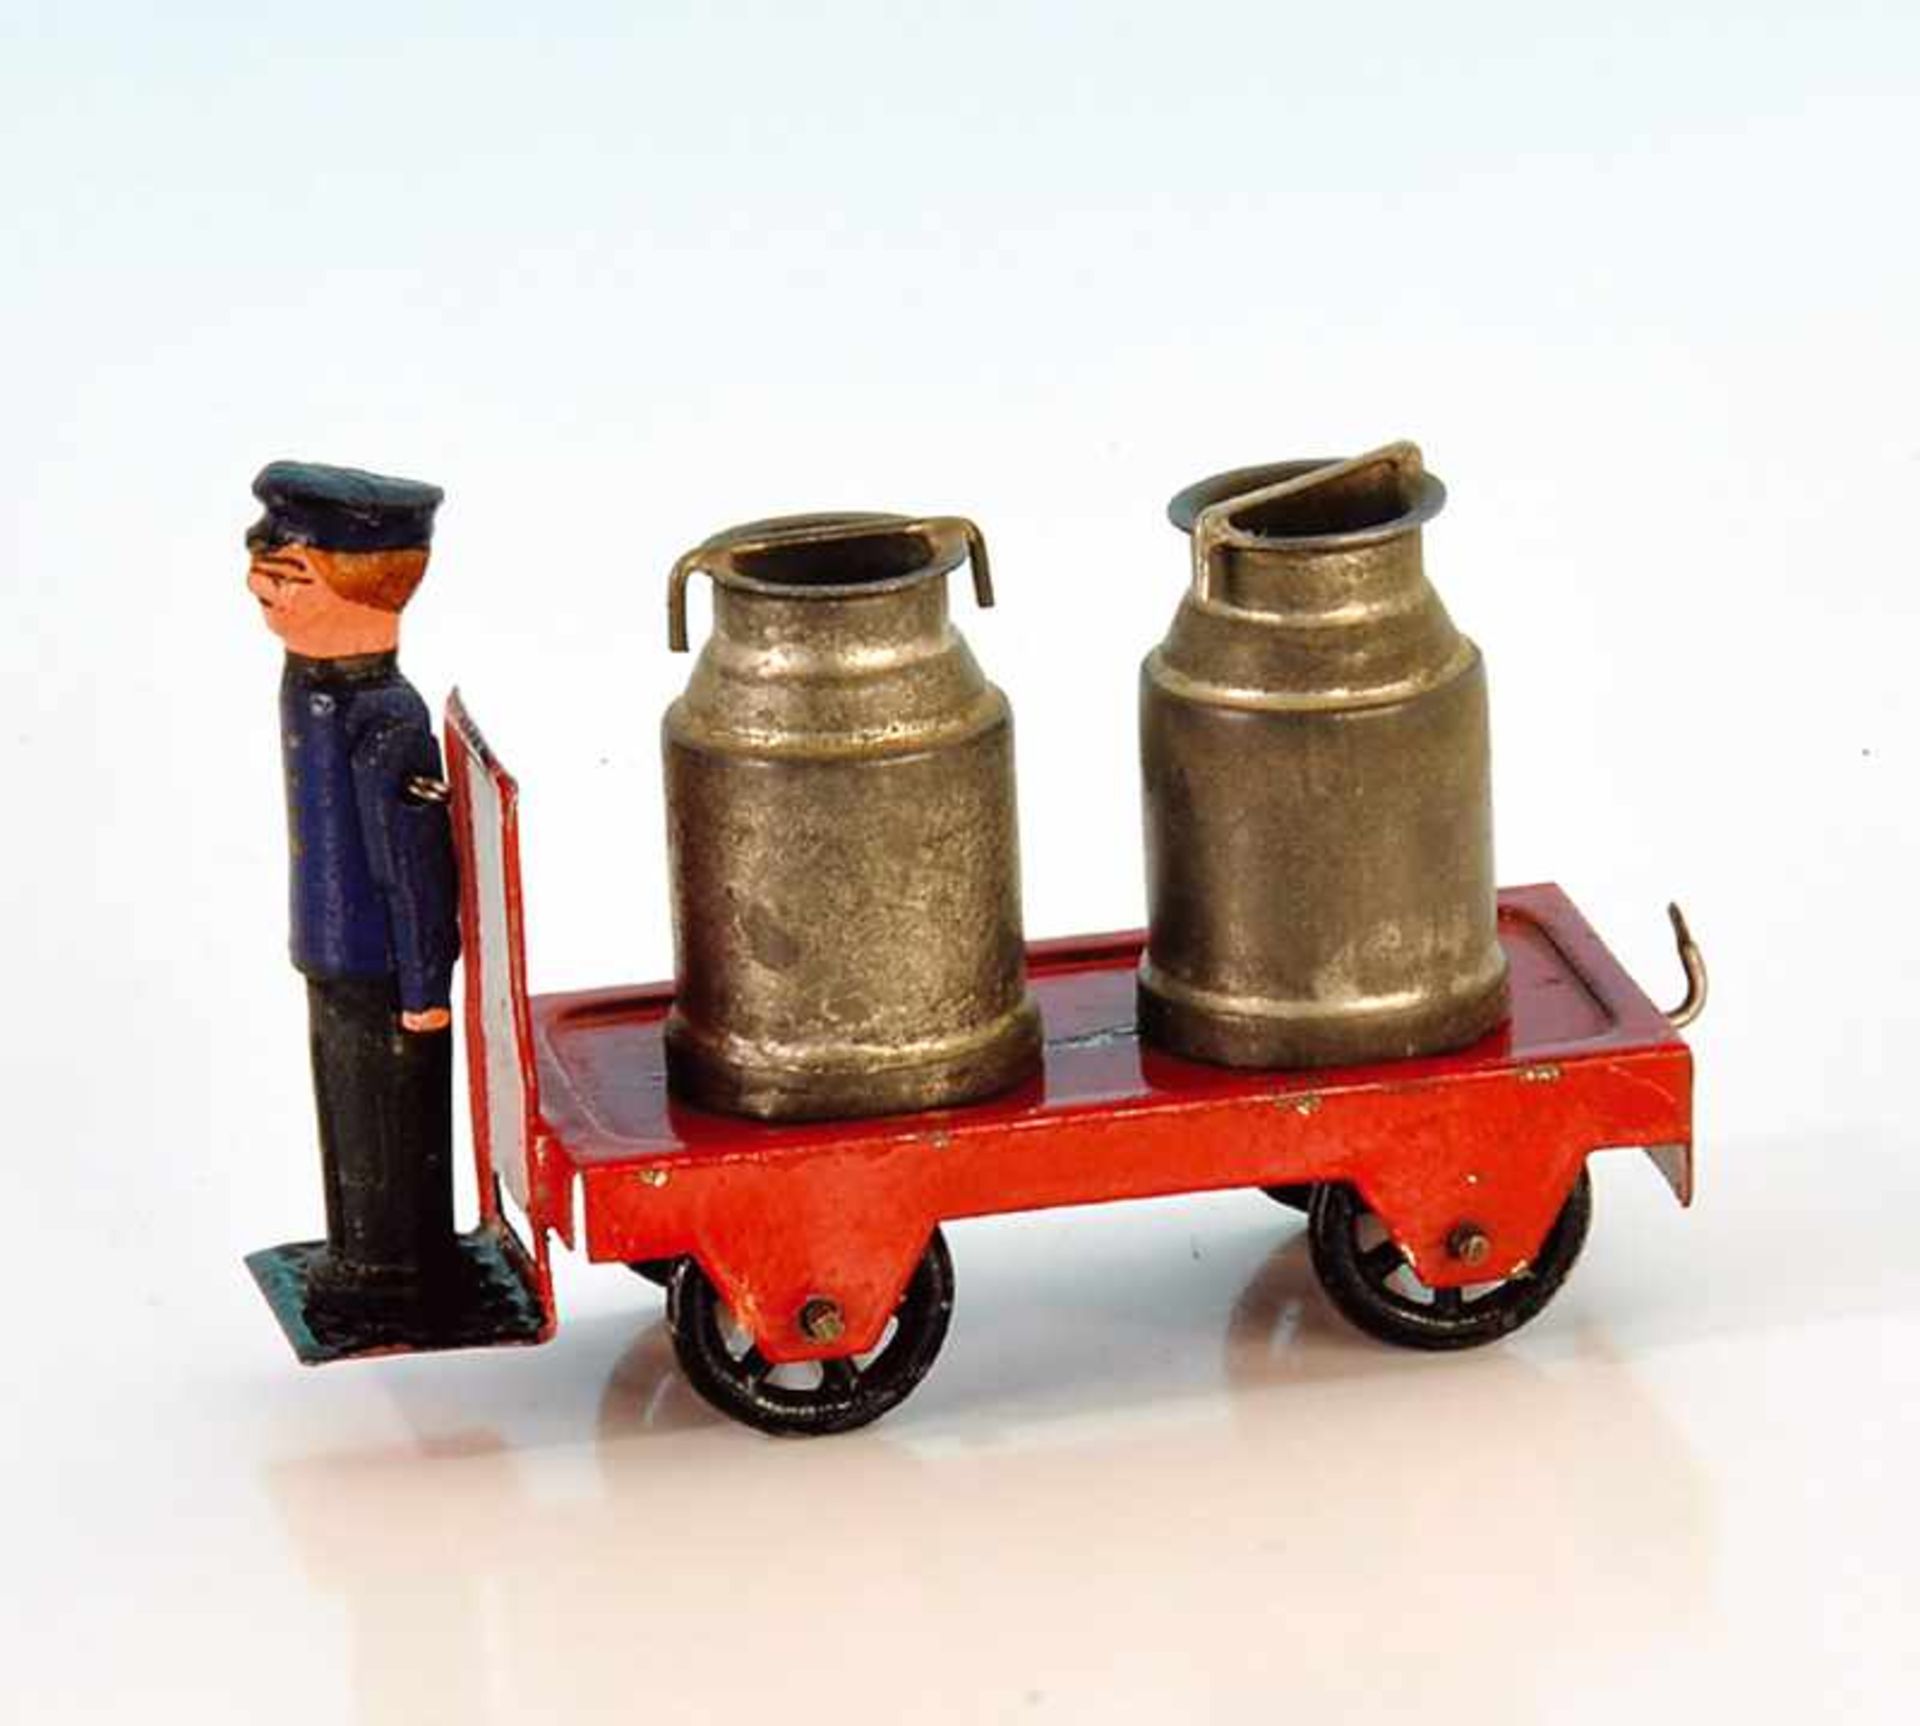 MÄRKLIN Bahnsteig-Gepäckkarren beladen mit 2 Milchkannen, Fahrer aus Holz, leichte Gebrauchsspuren.